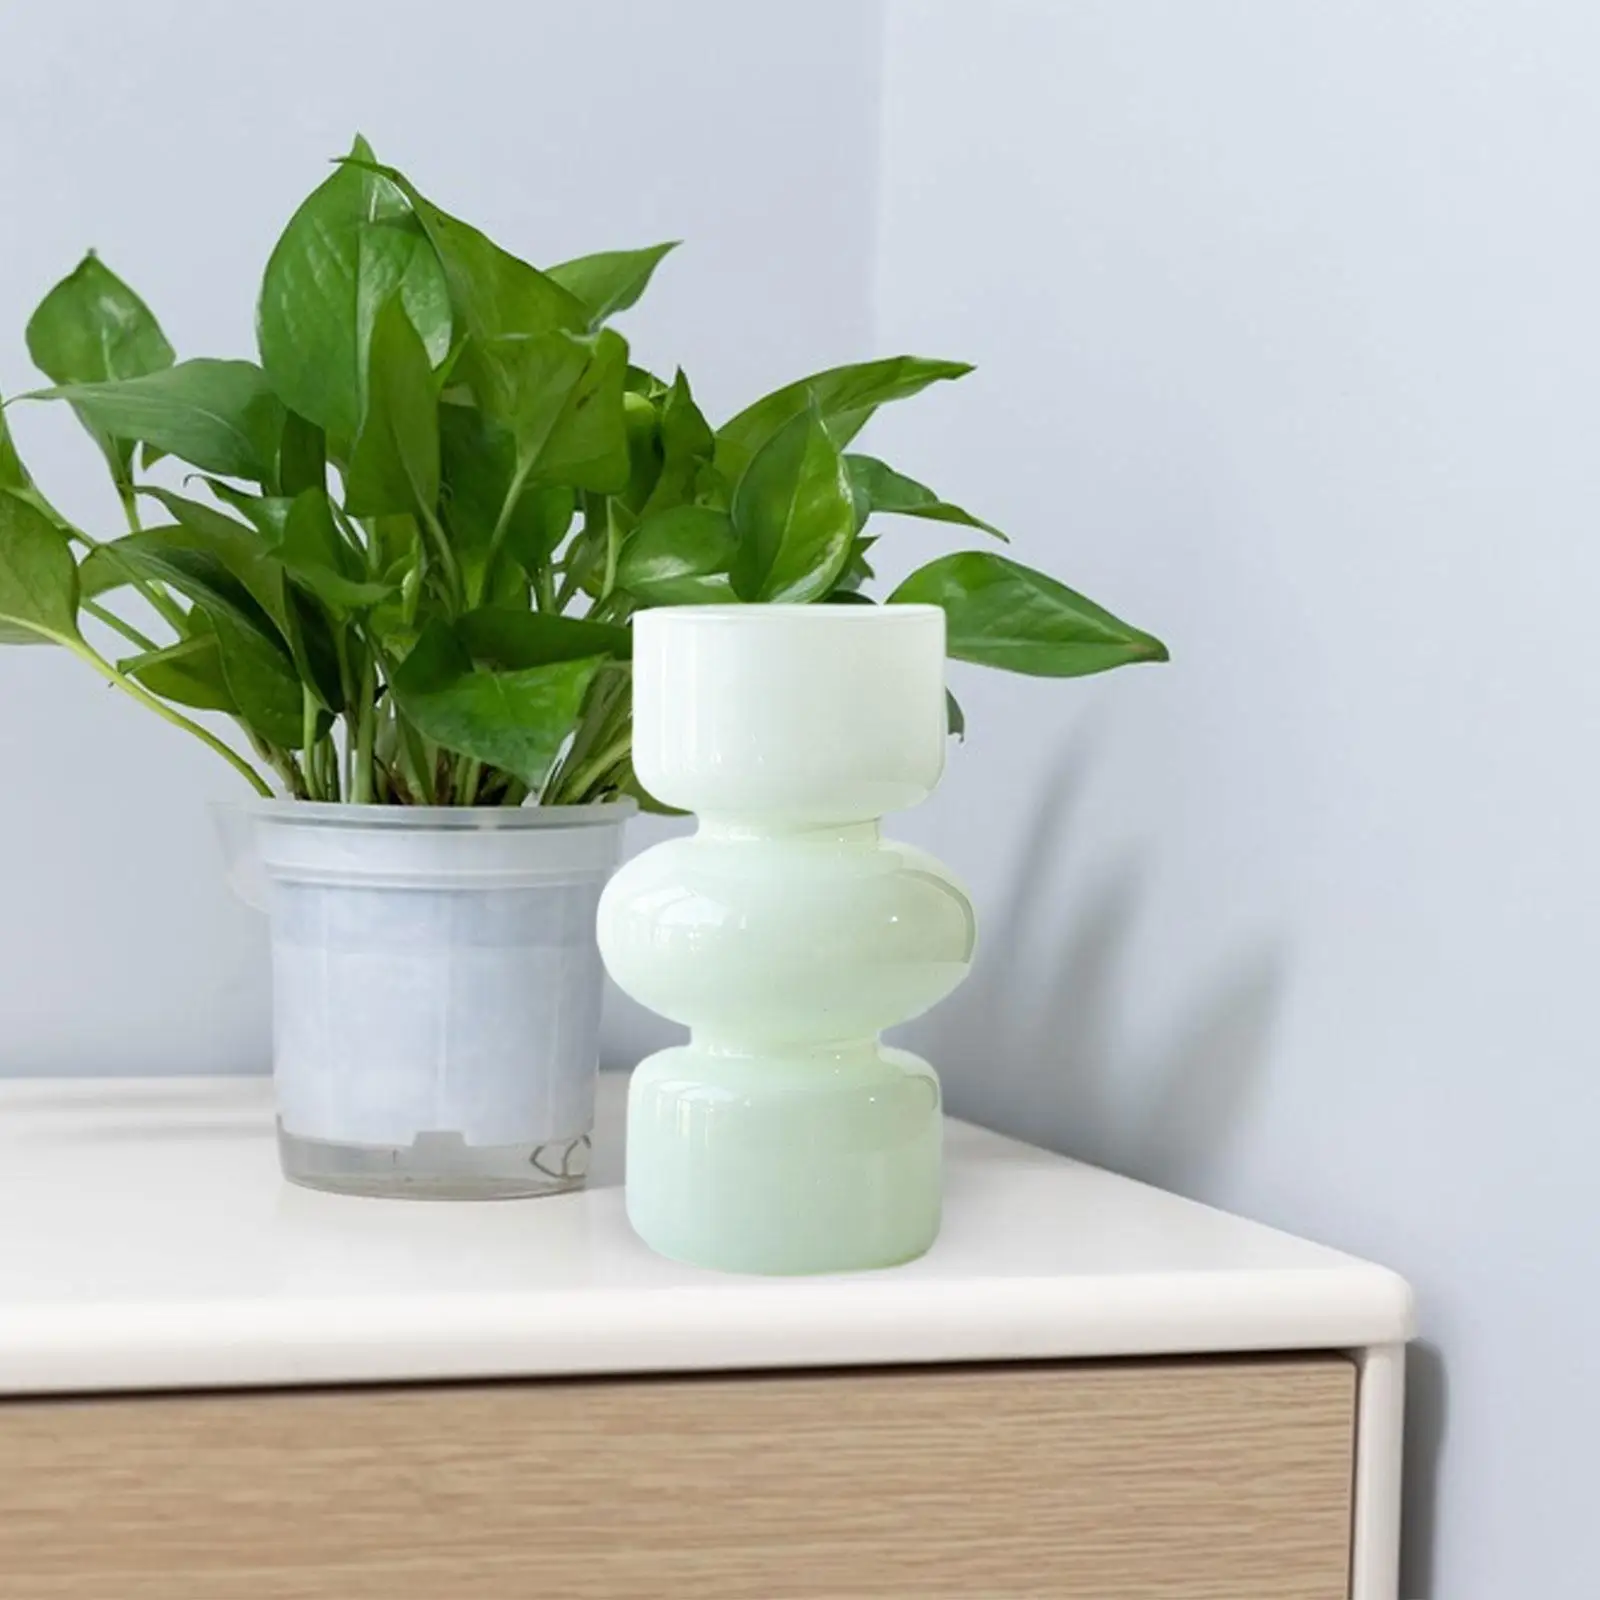 Decorative Vases Crafts Modern Artwork Creative Floral Arrangement Flowers Container for Desk Holidays Living Room Bedroom Shelf